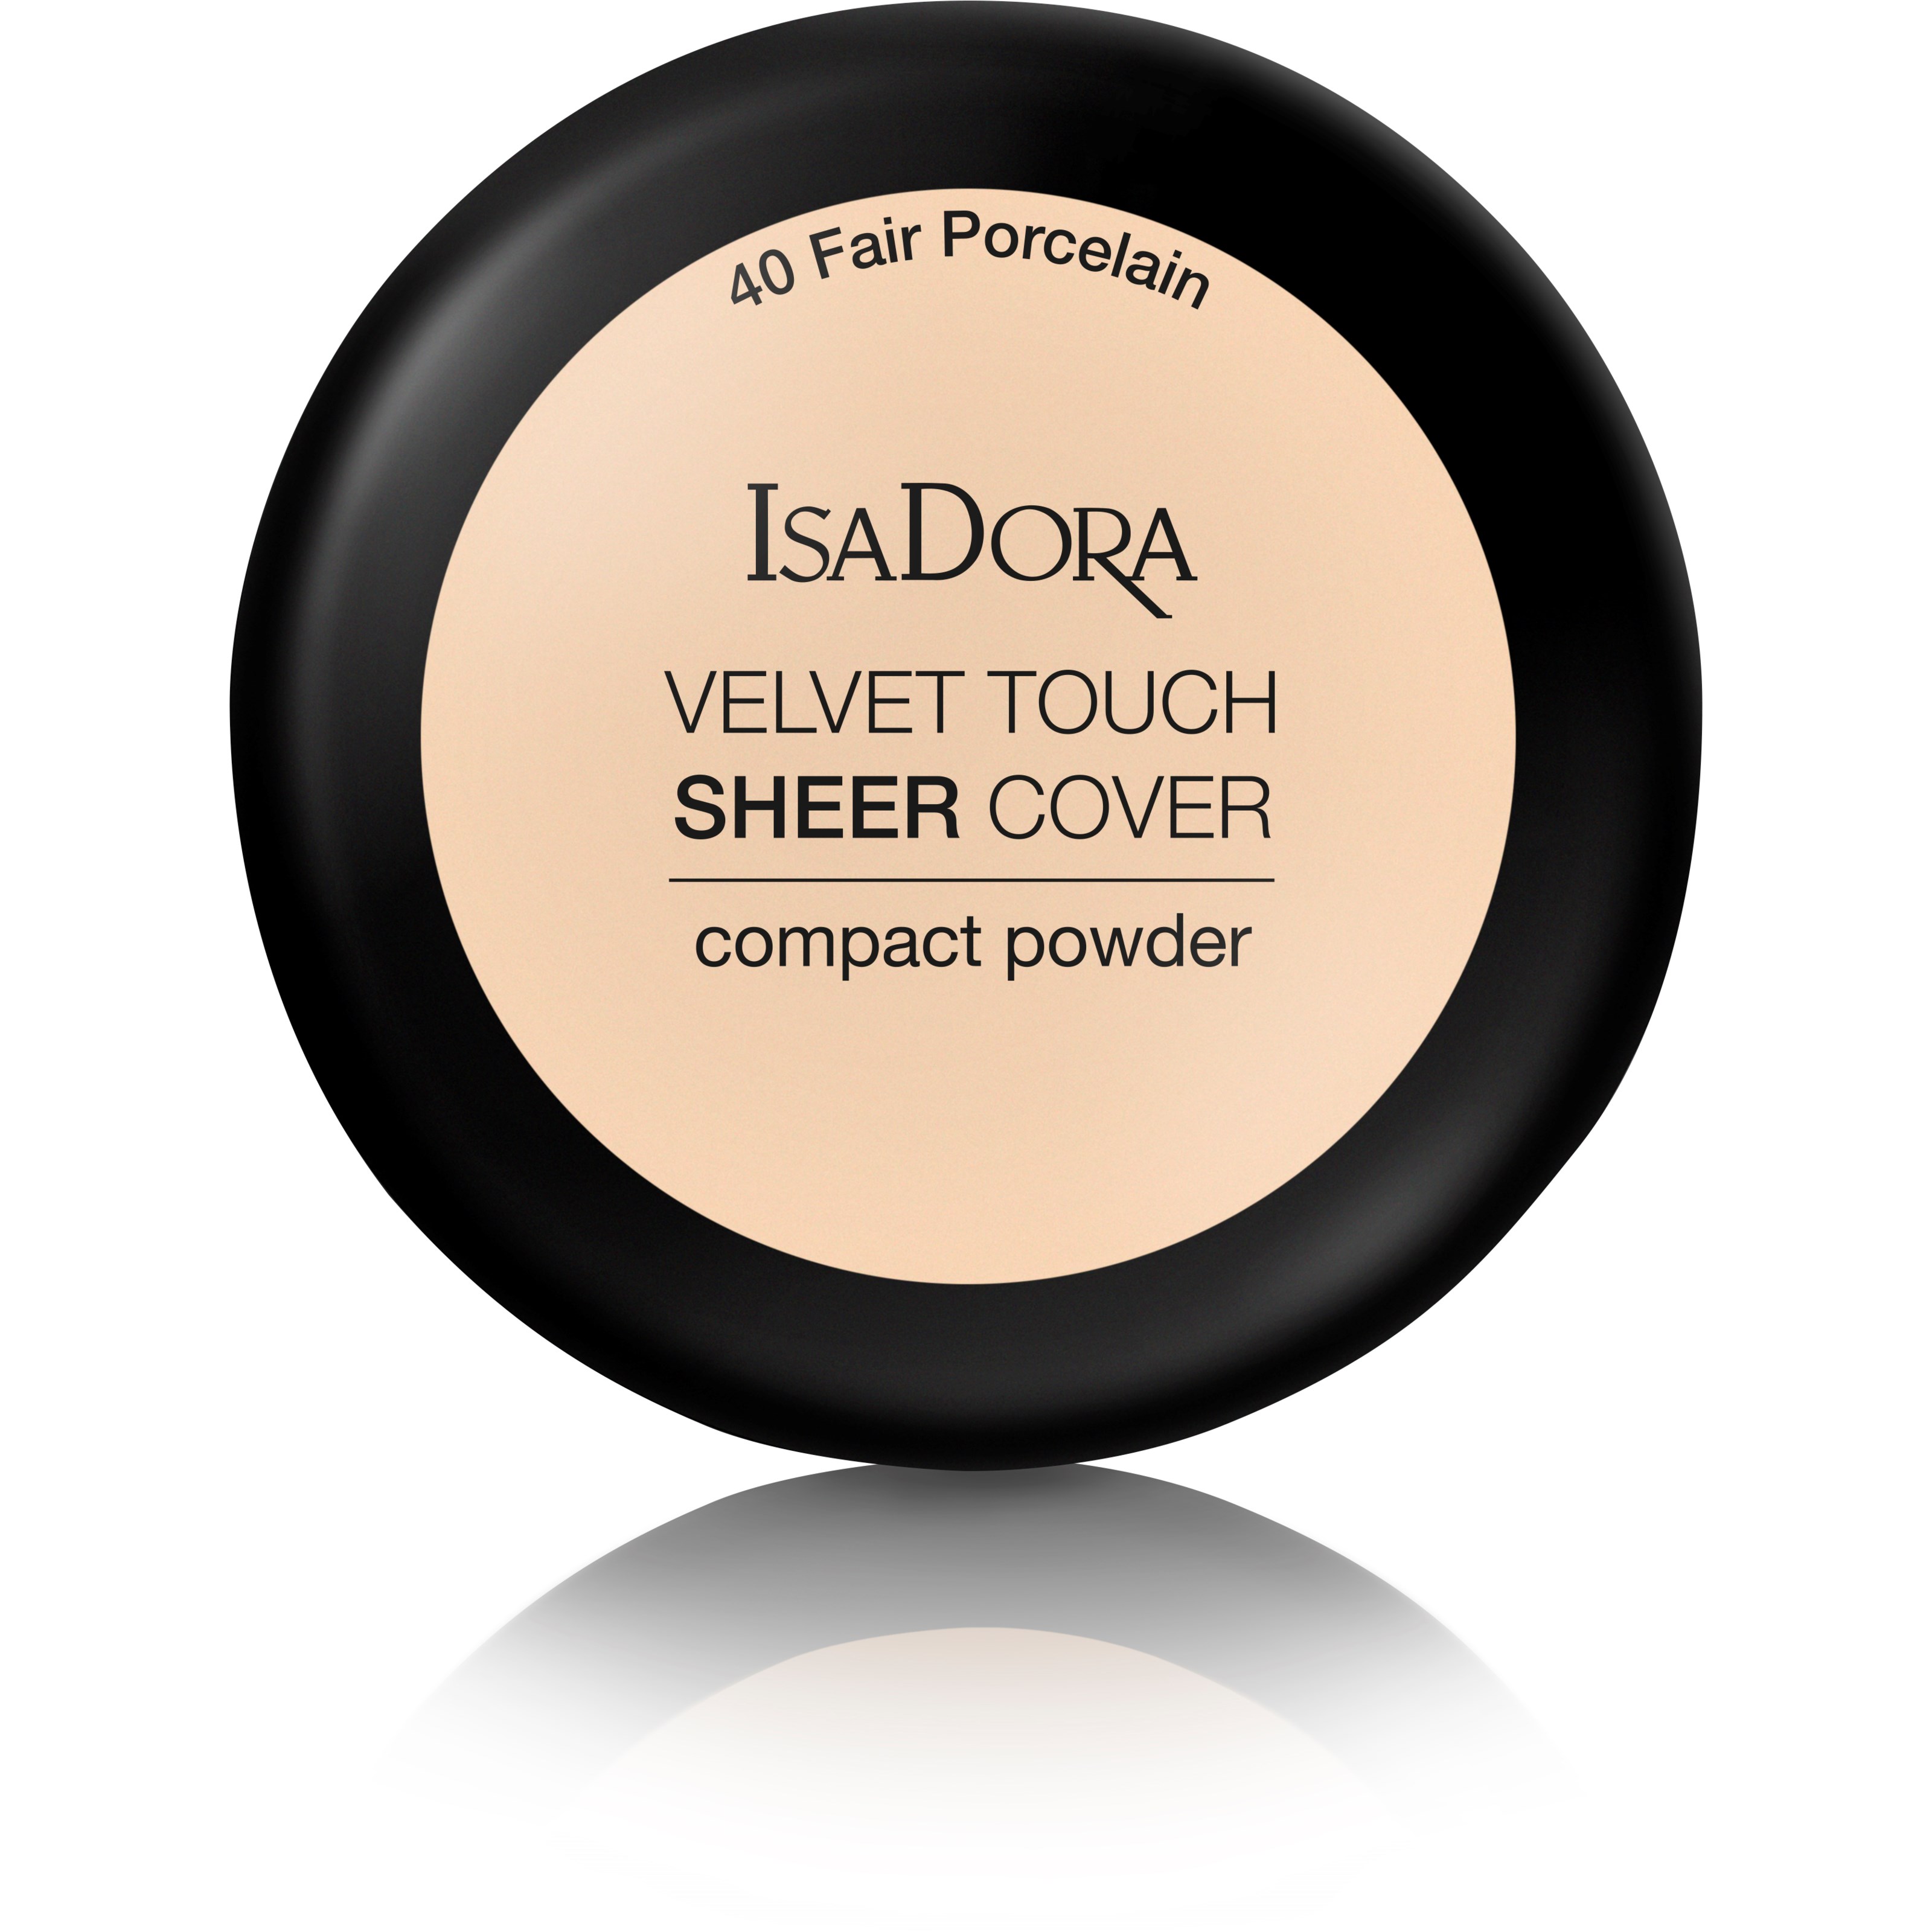 Läs mer om IsaDora Velvet Touch Sheer Cover Compact Powder 40 Fair Porcelain